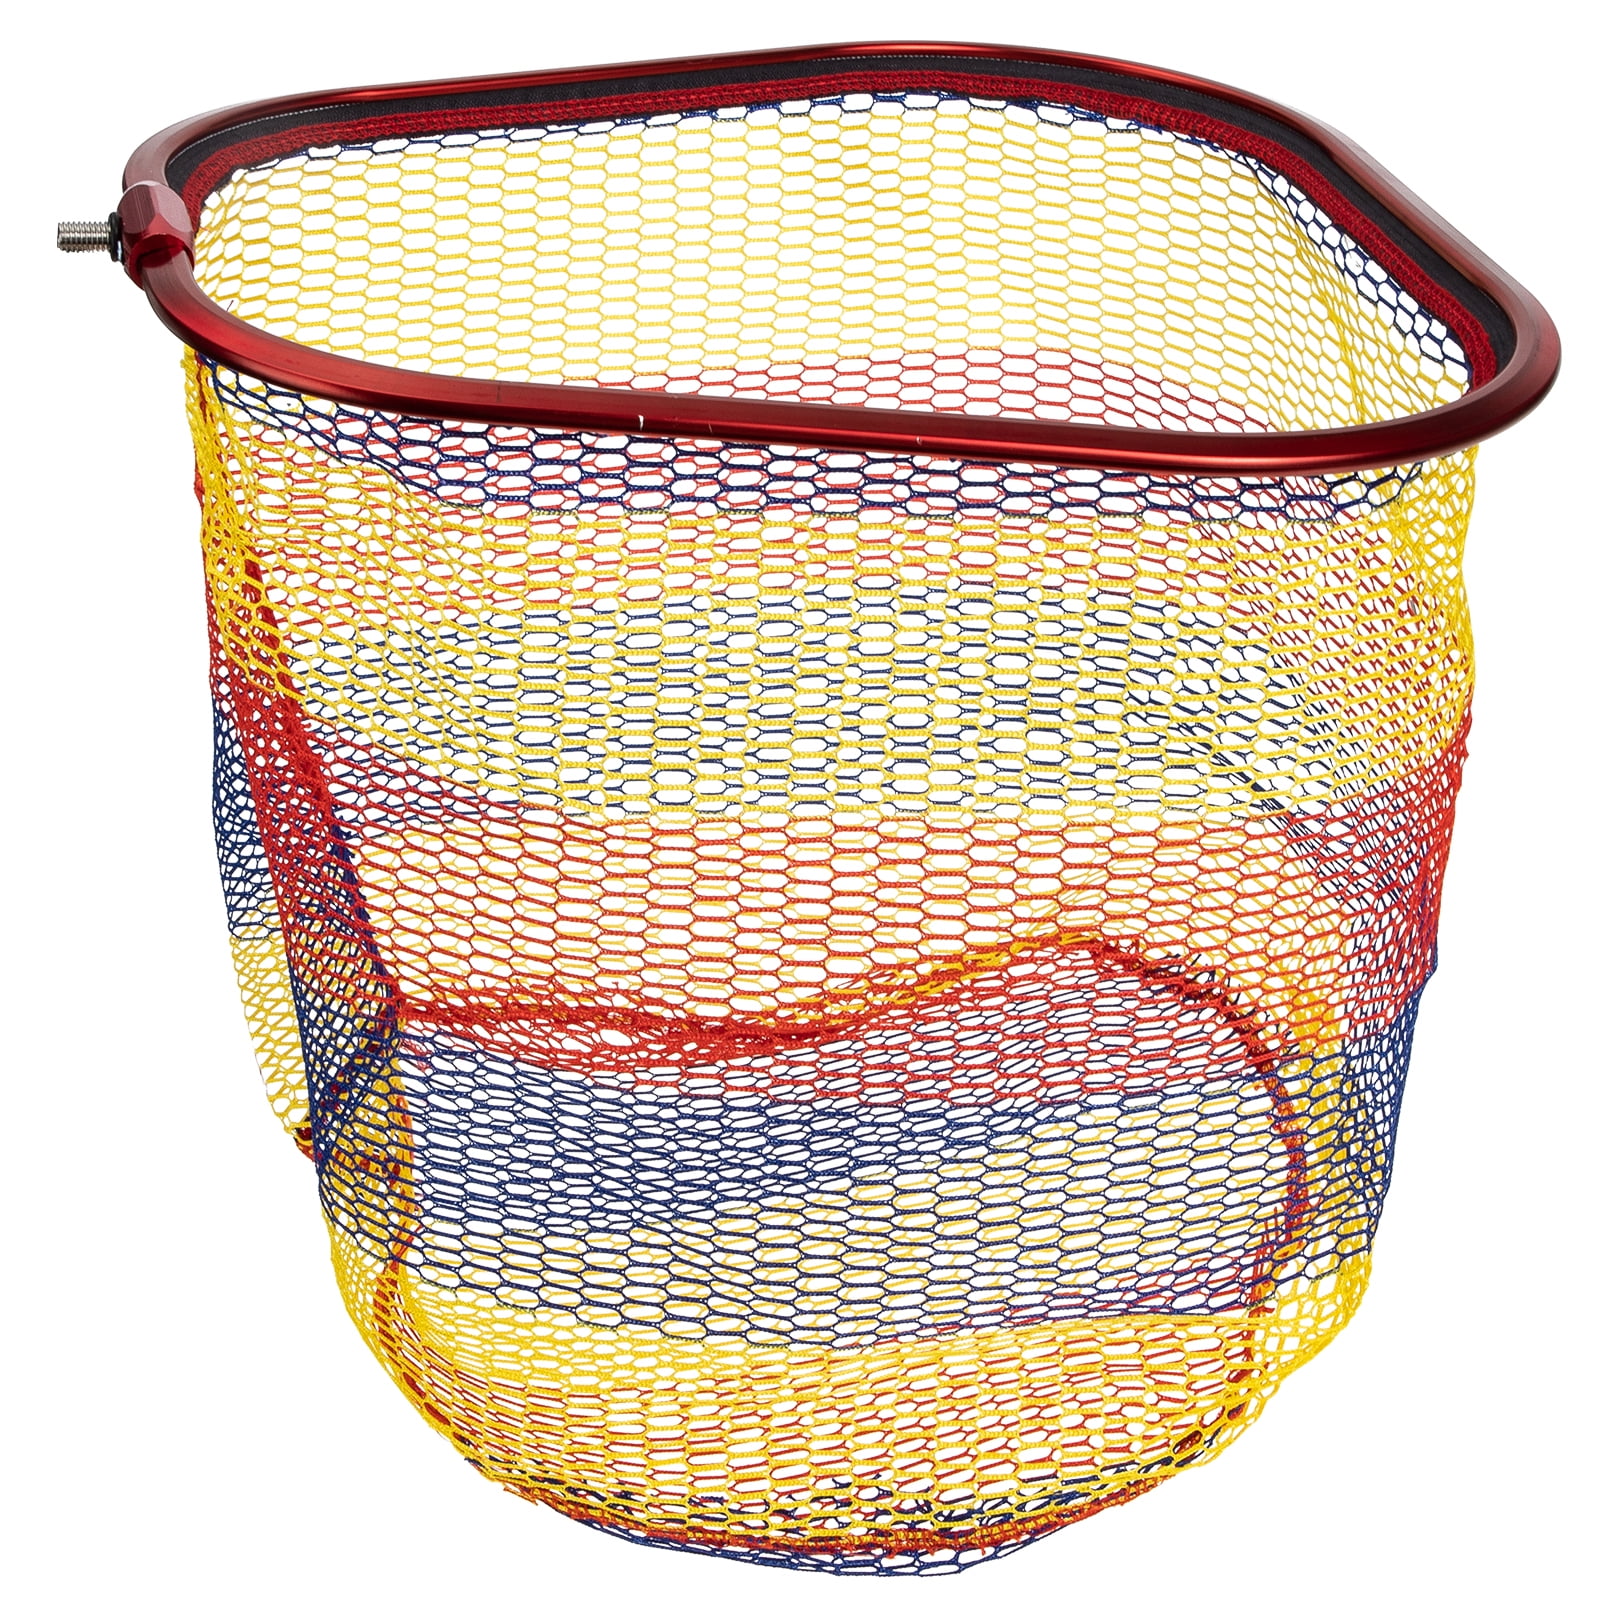 Homemaxs Fishing Net Durable Deepened Fishing Mesh Net Fine